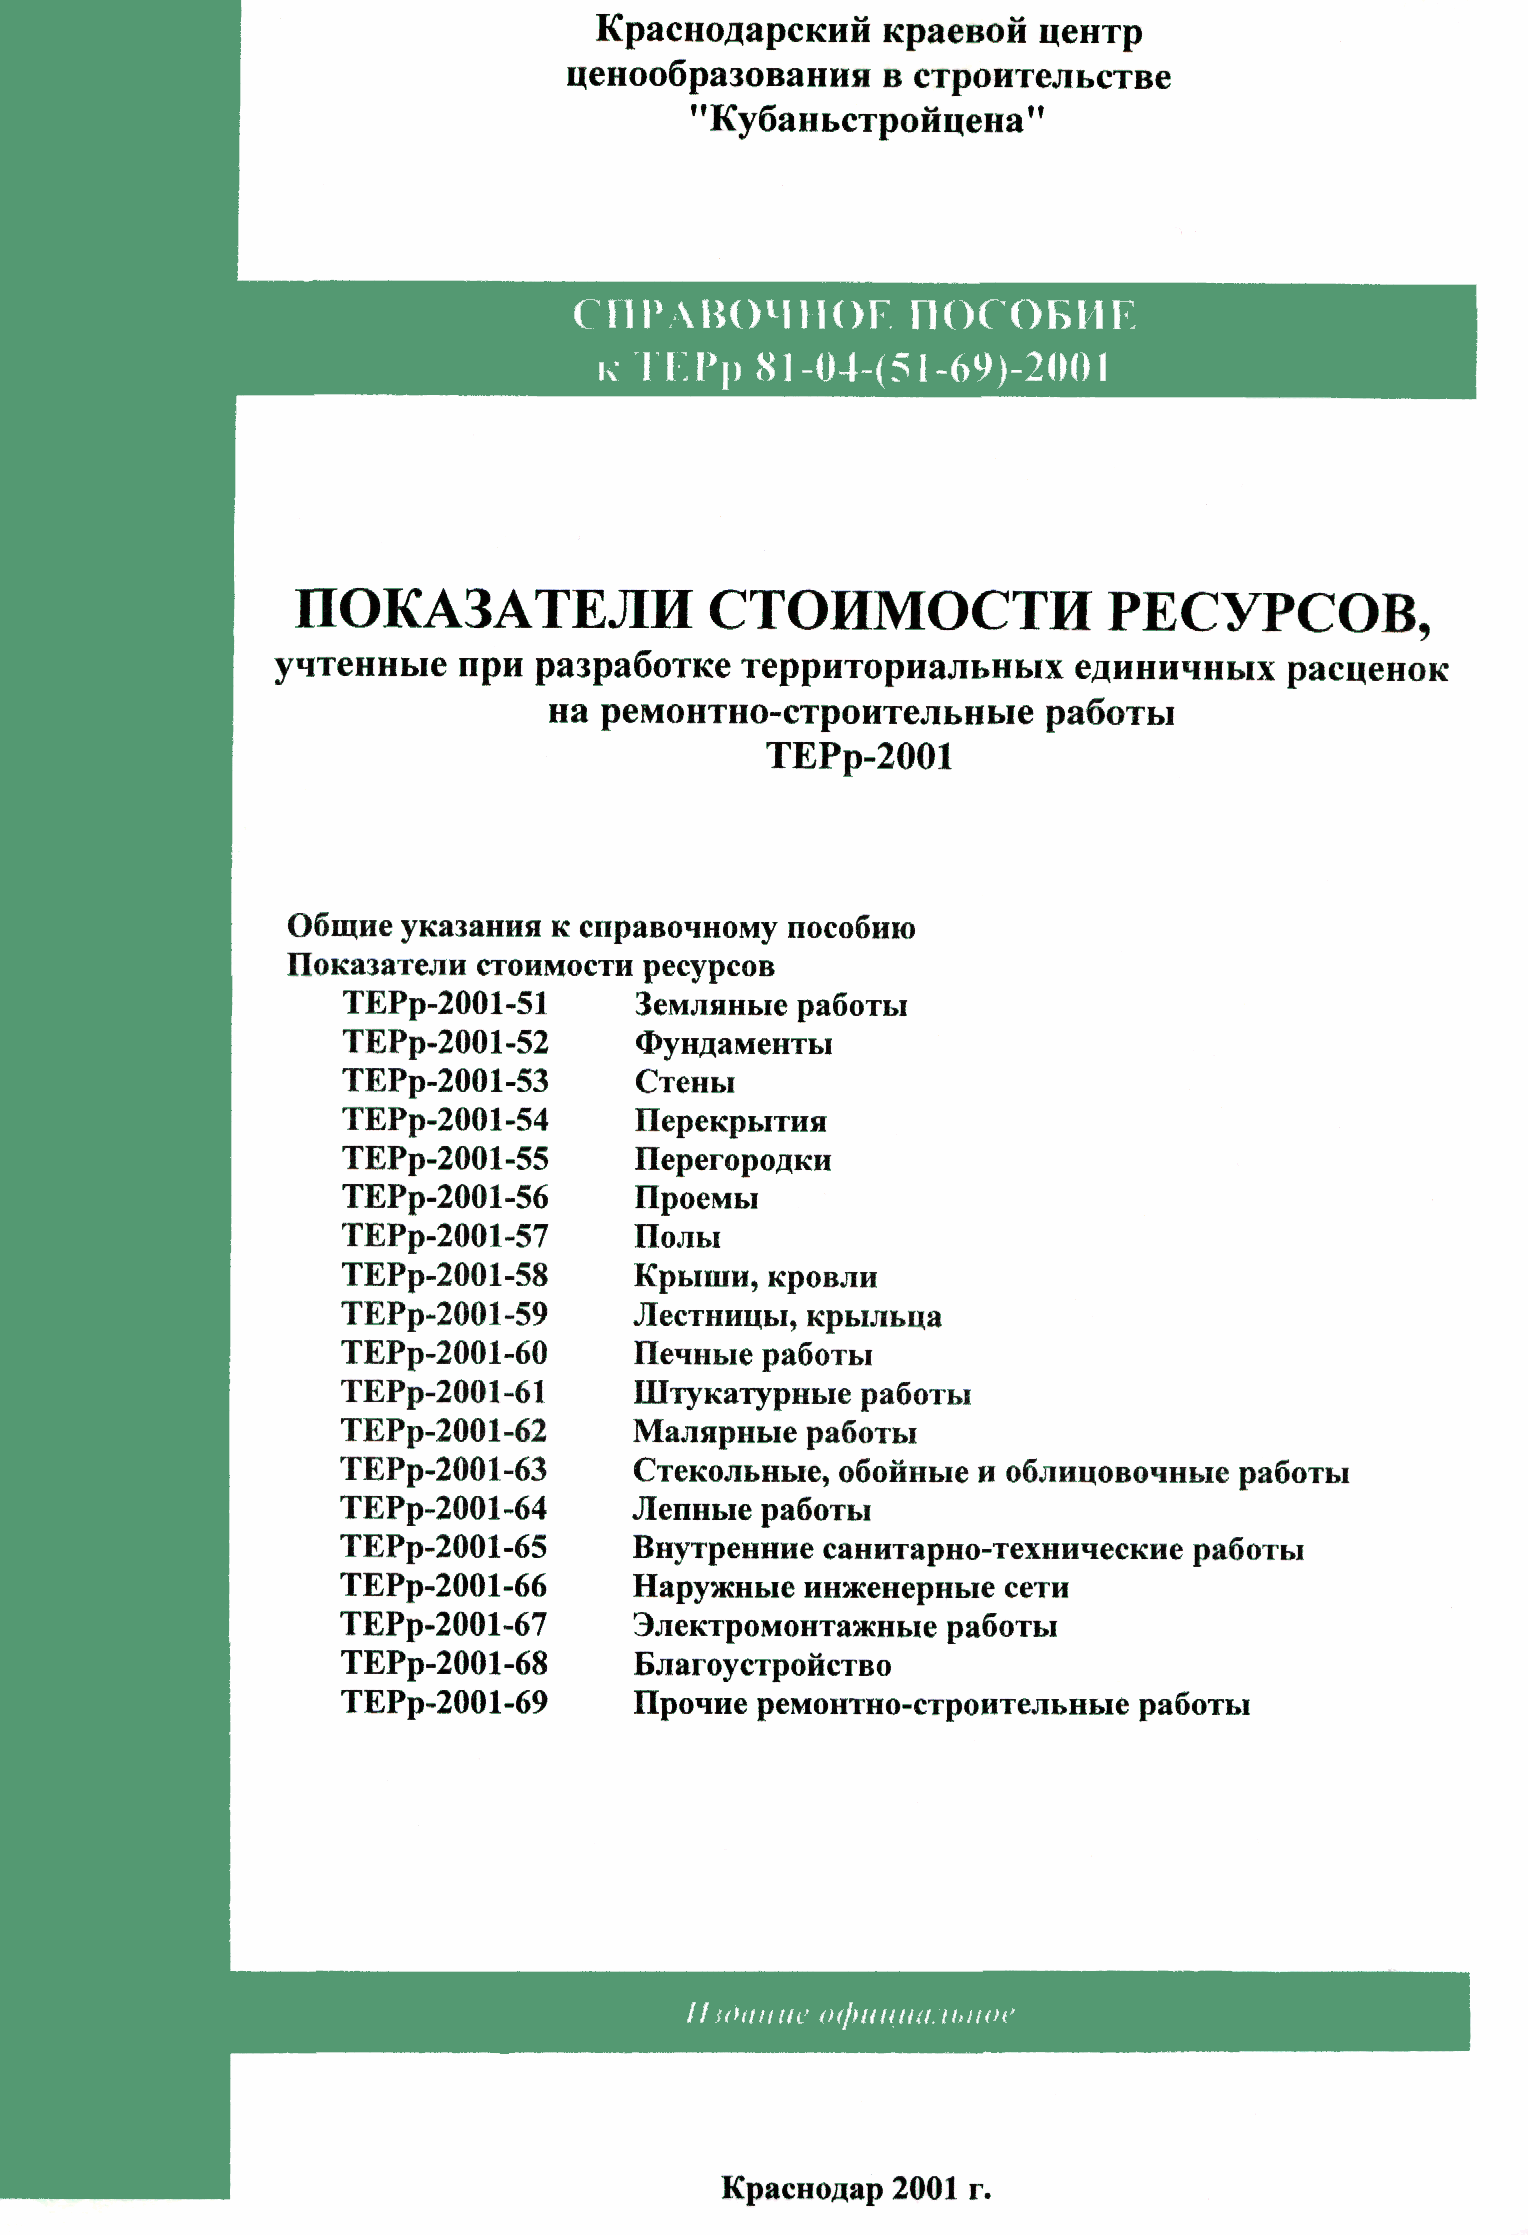 Справочное пособие к ТЕРр 81-04-53-2001